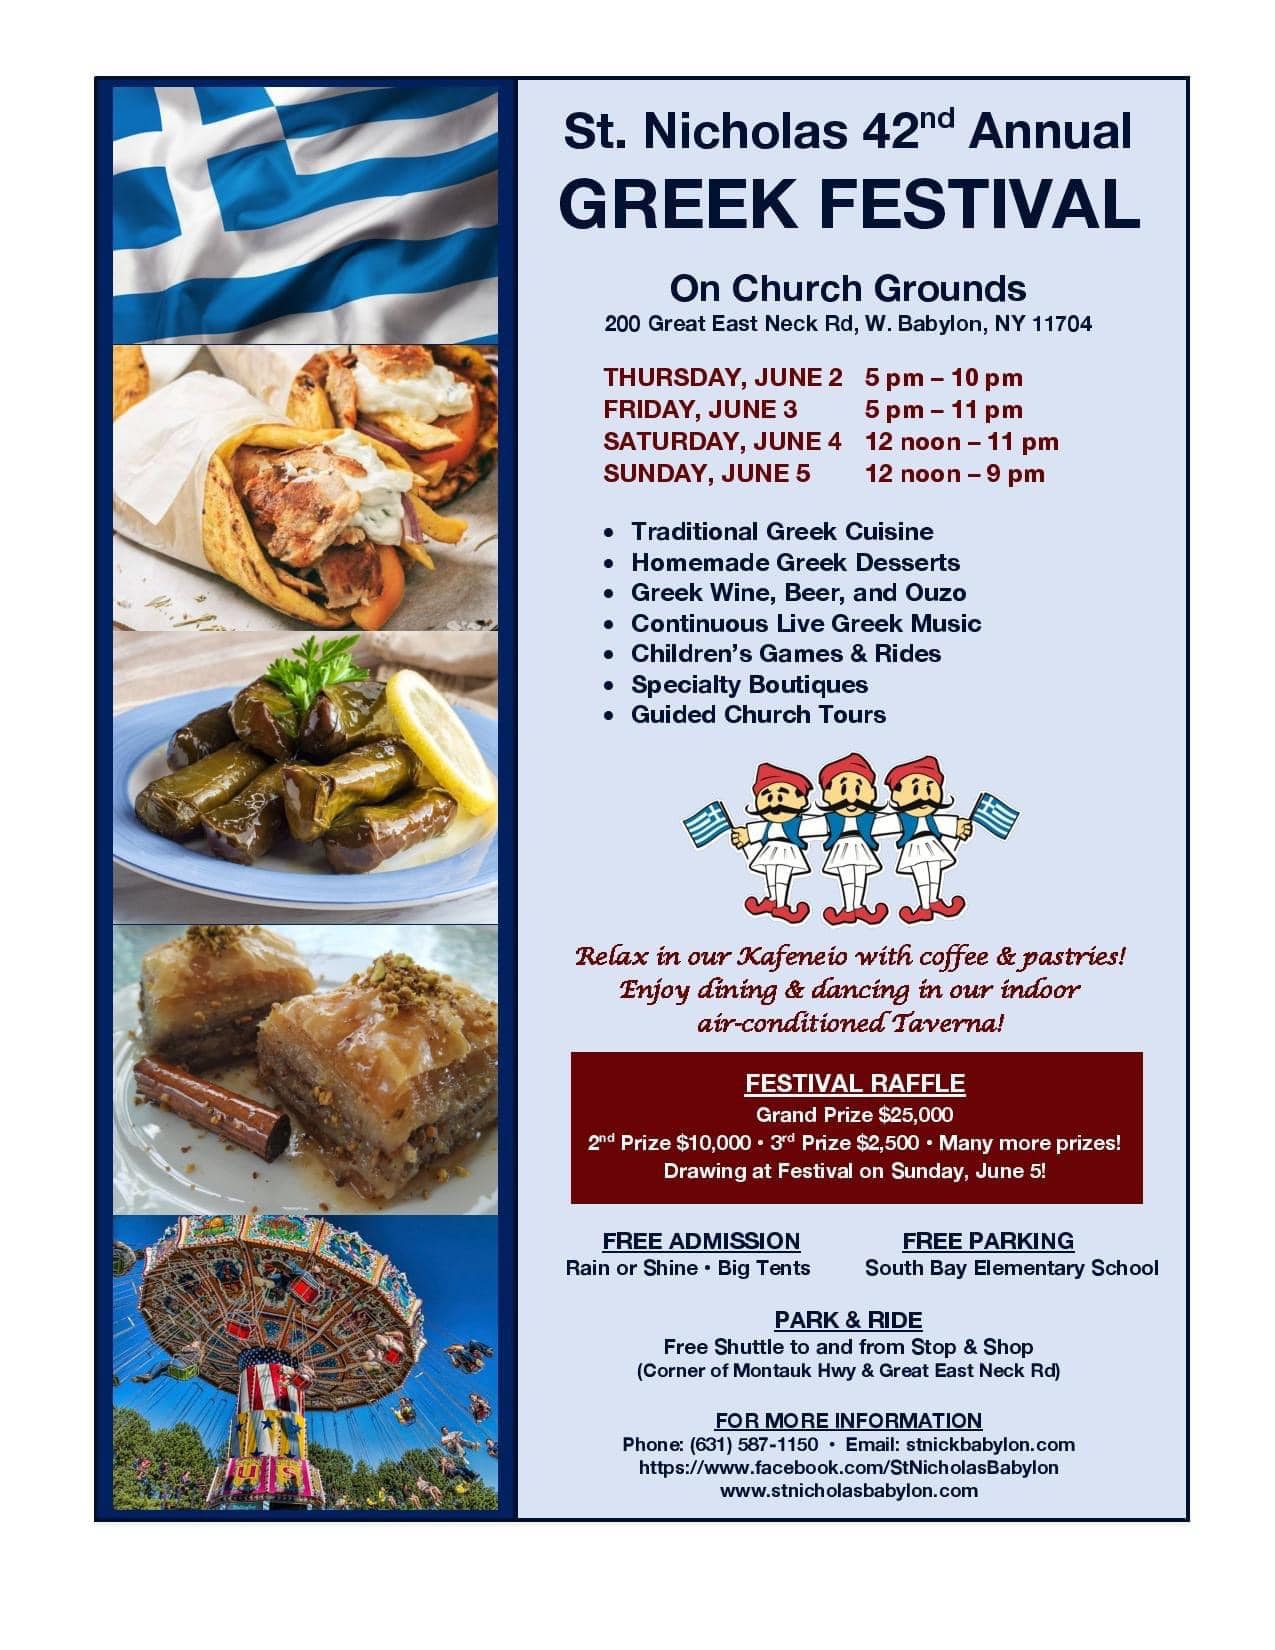 St. Nicholas Greek Festival 2022 West Babylon, NY NY Carnivals